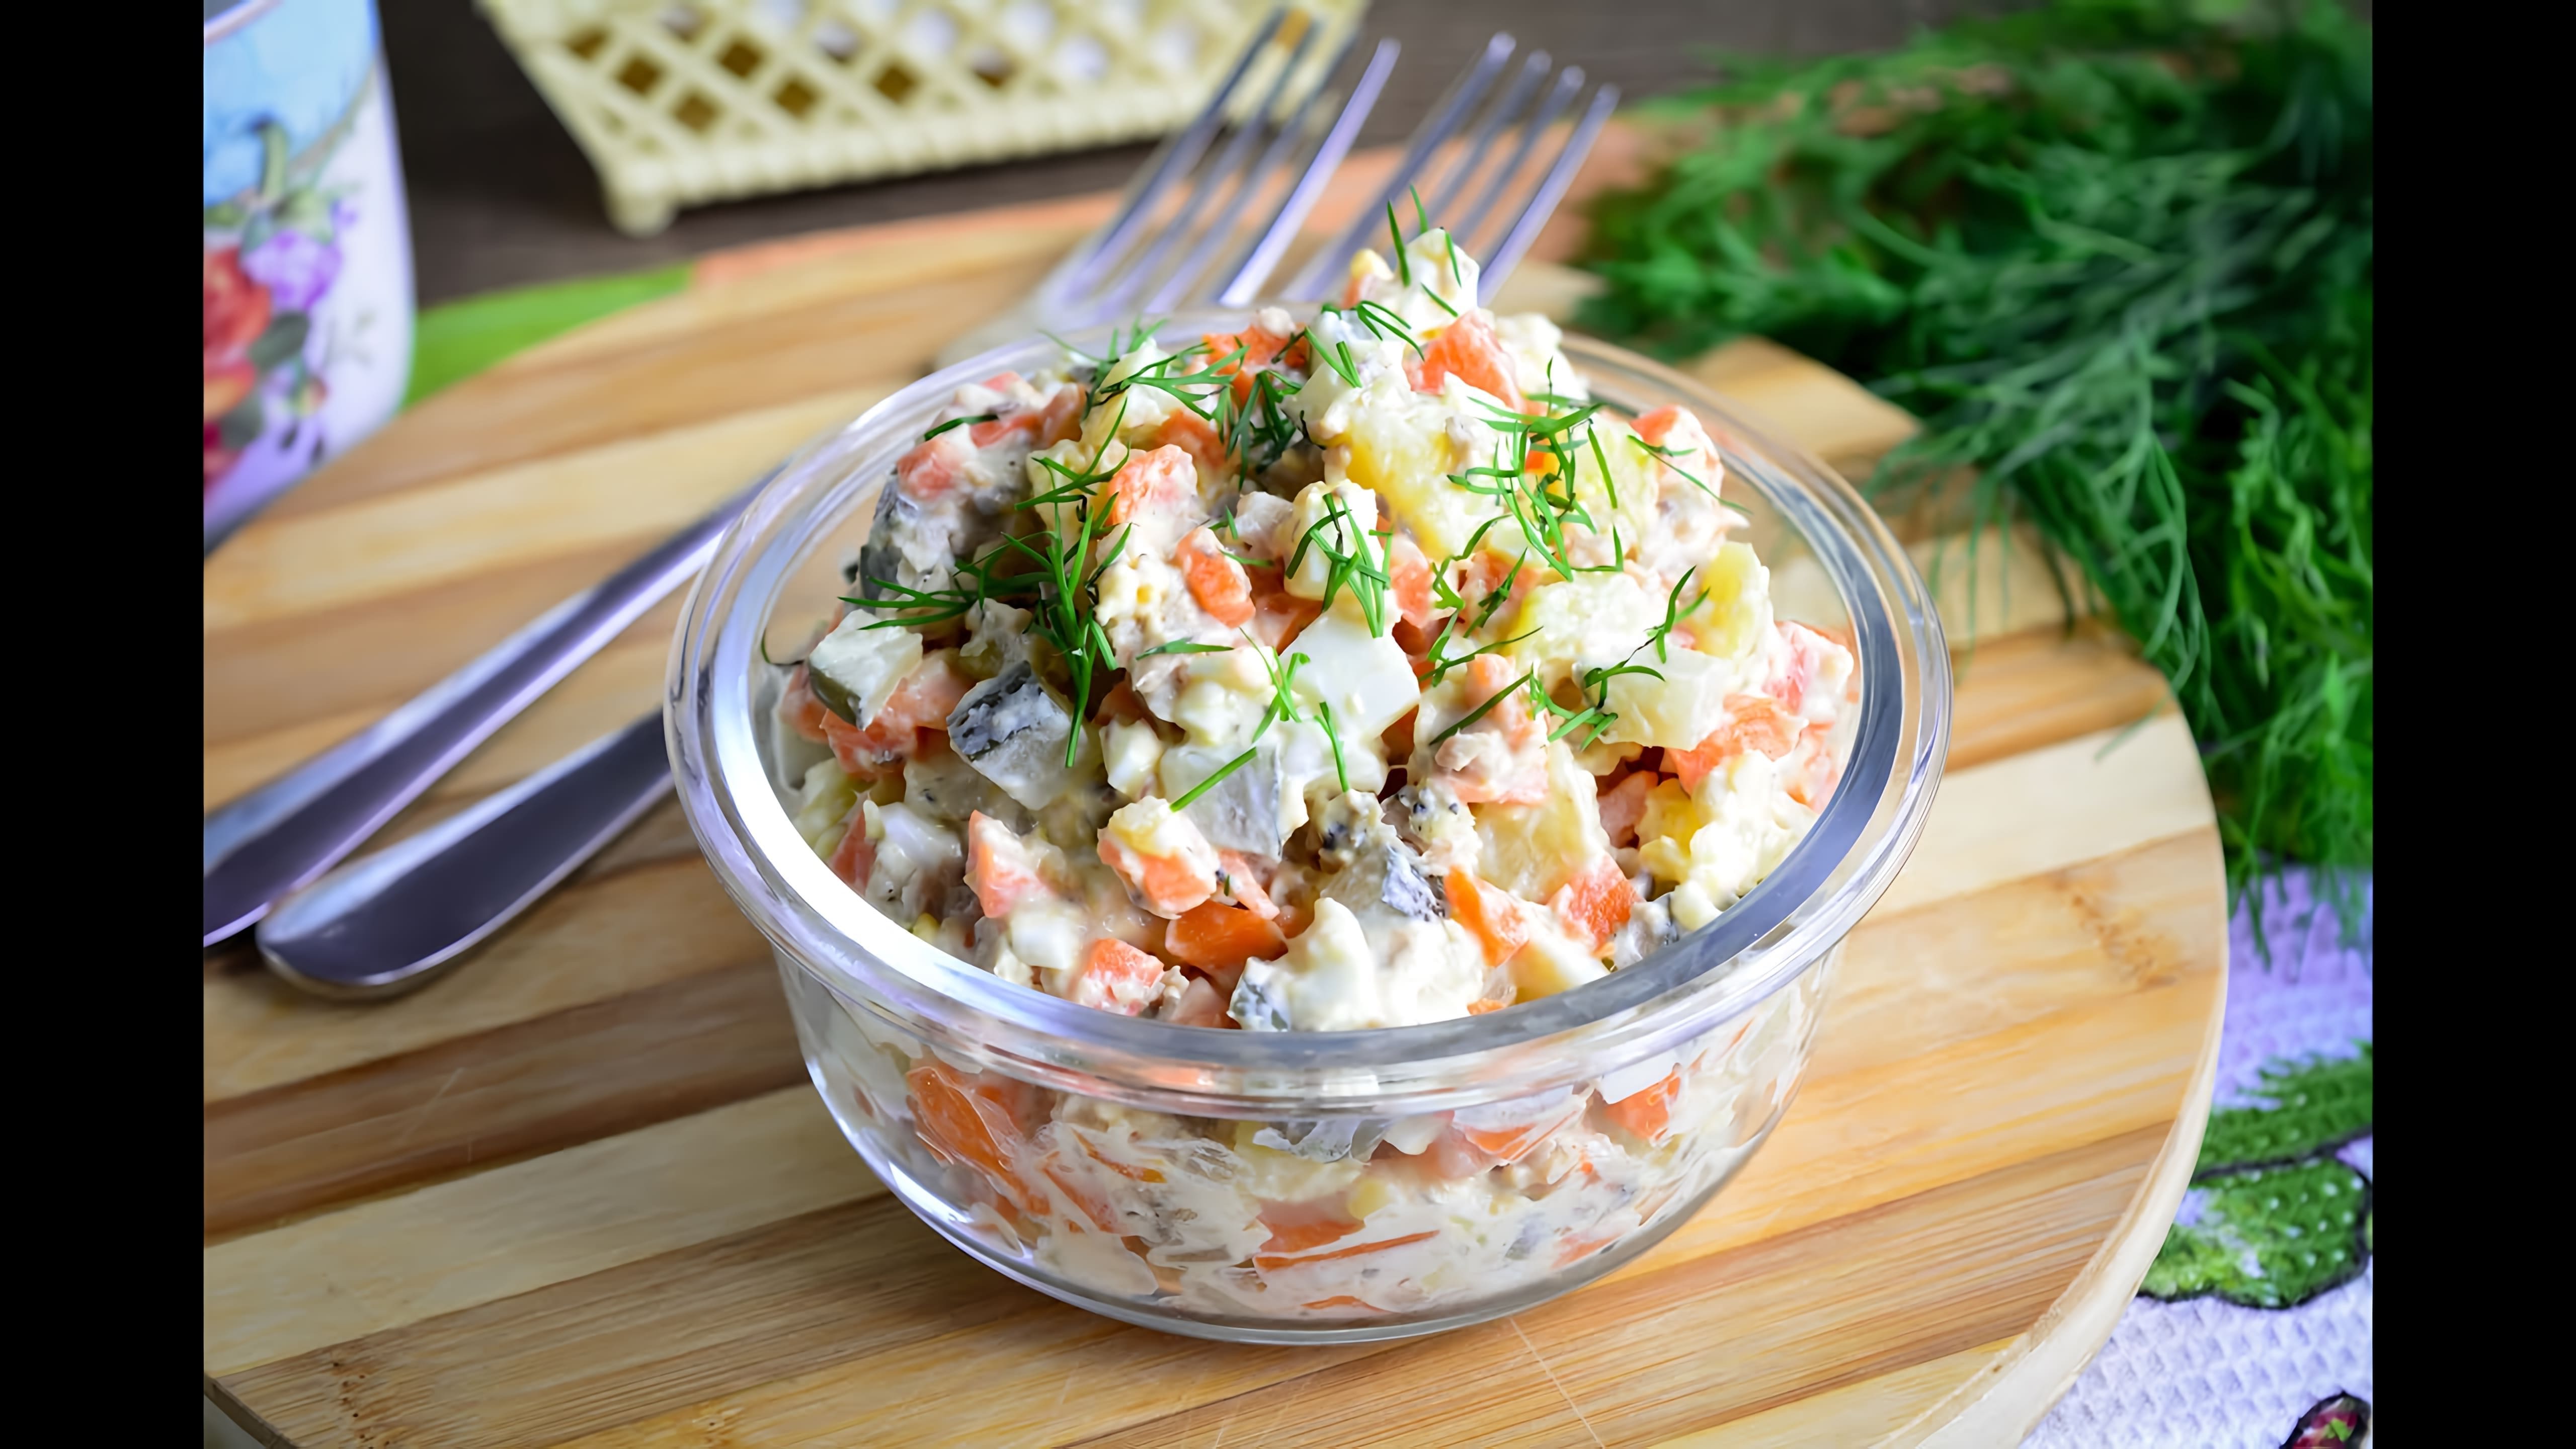 В этом видео демонстрируется рецепт картофельного салата с рыбными консервами